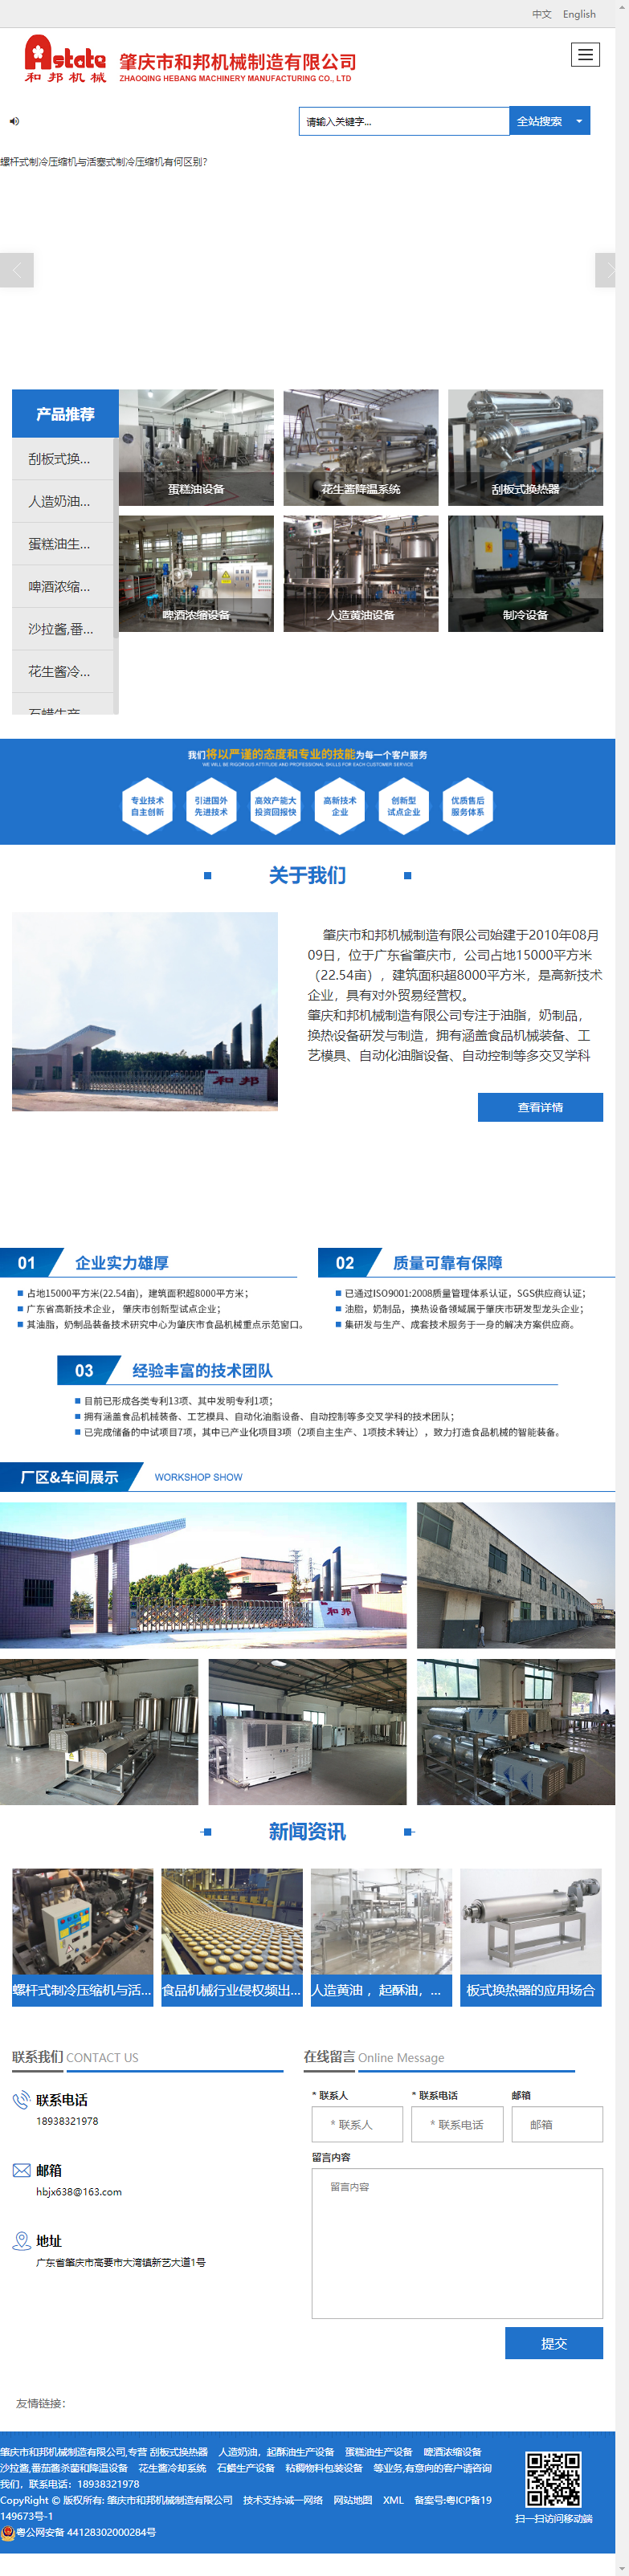 肇庆市和邦机械制造有限公司网站案例